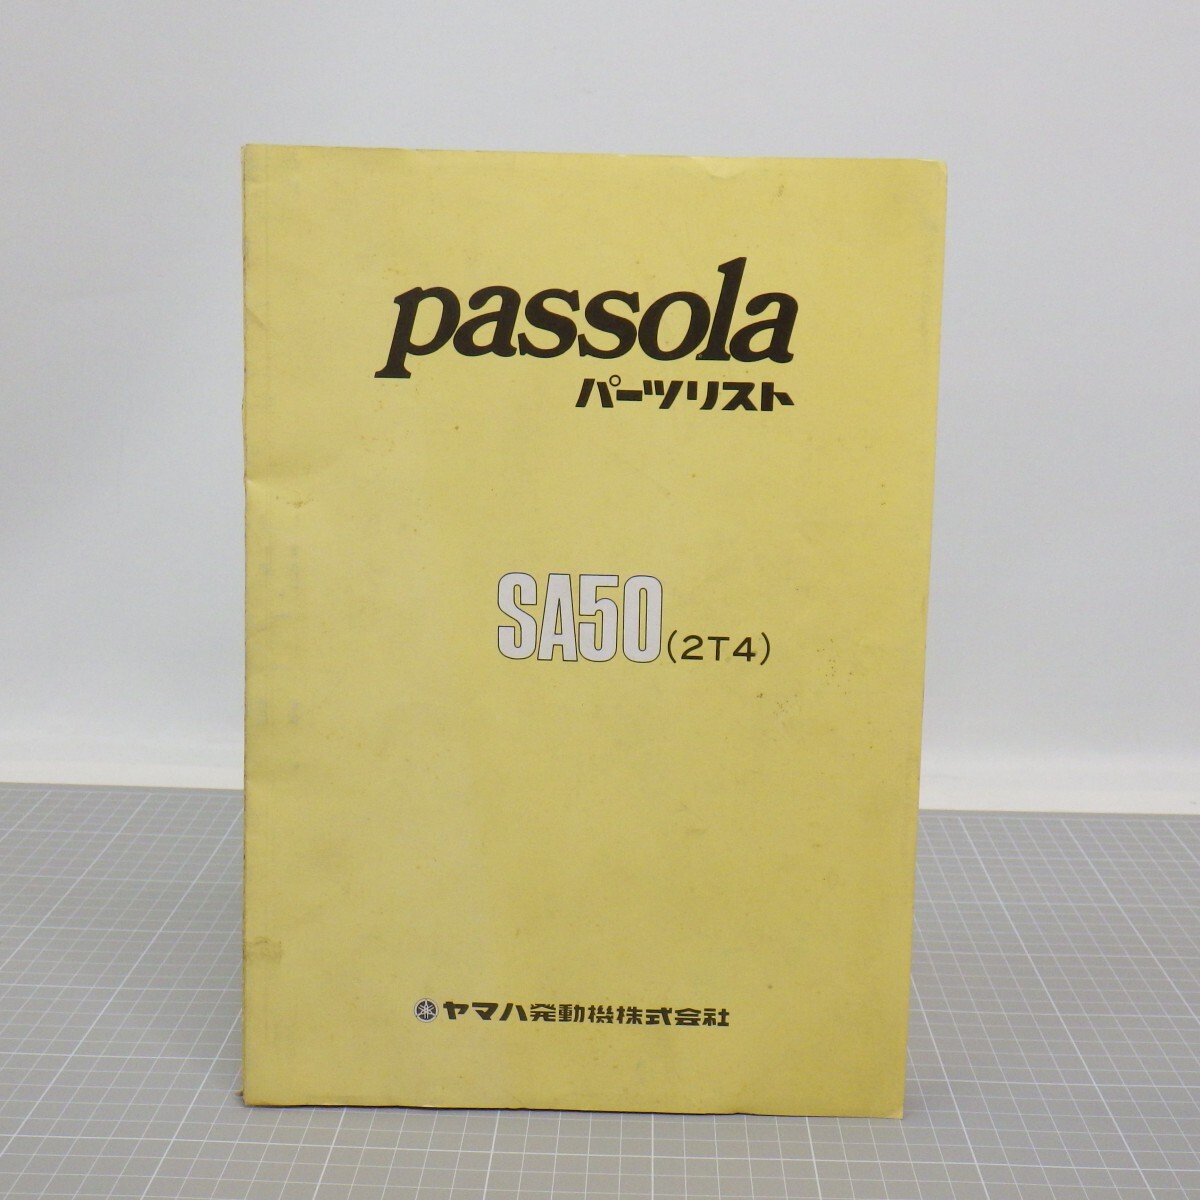  Yamaha [passola/ Passola ] список запасных частей /SA50(2T4)/ Showa 53 год 1 версия / каталог запчастей YAMAHA retro мотоцикл мотоцикл сервисная книжка / повреждение иметь L